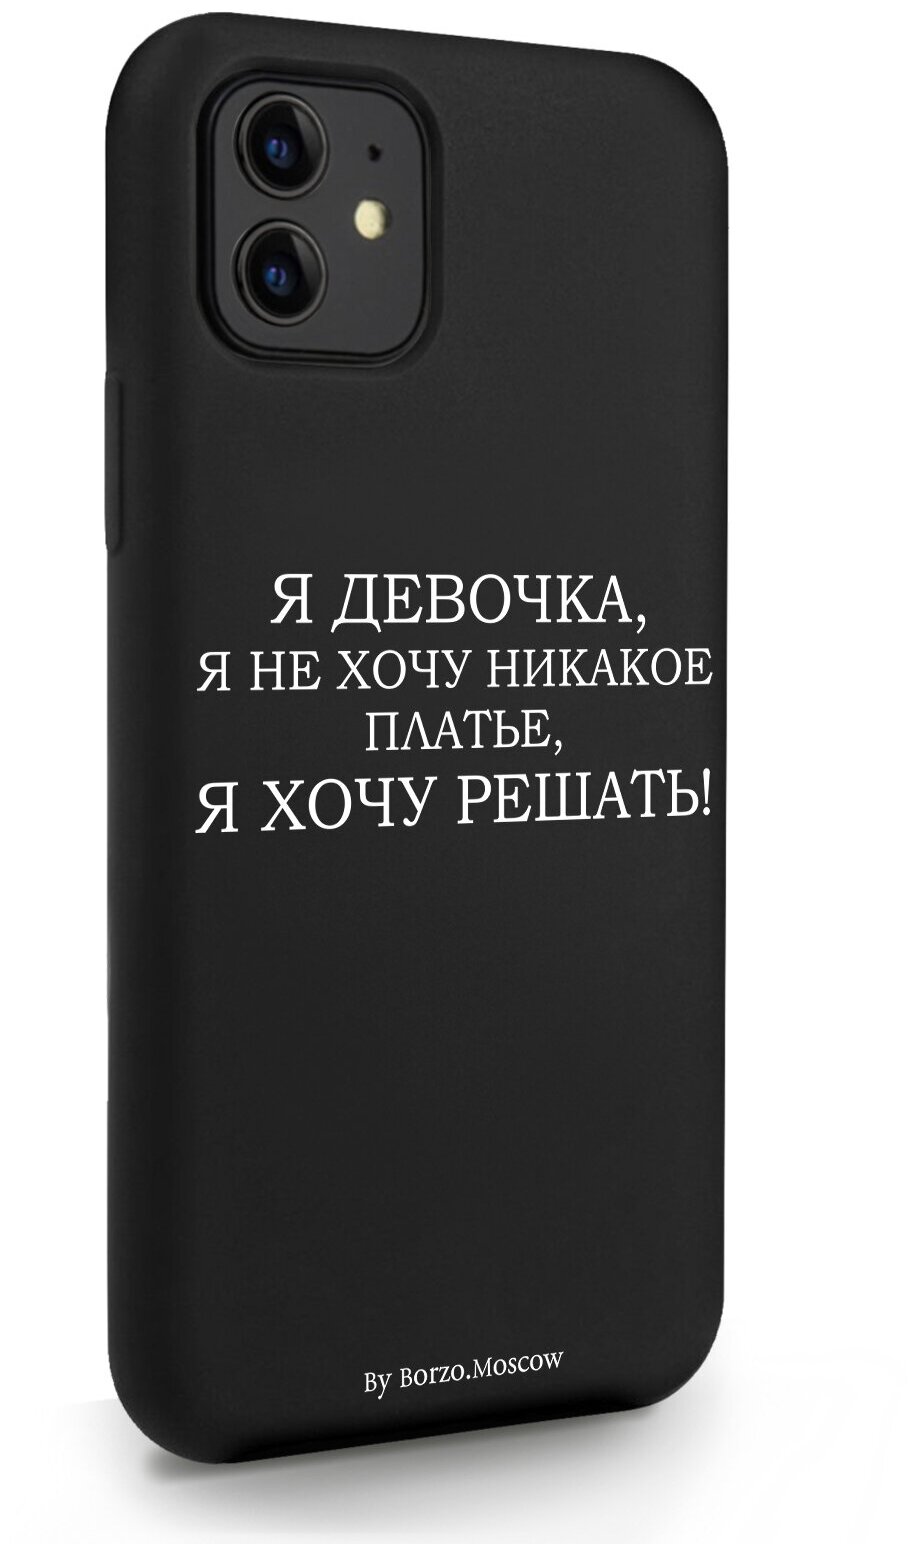 Черный силиконовый чехол Borzo.Moscow для iPhone 11 Я девочка, я хочу решать для Айфон 11